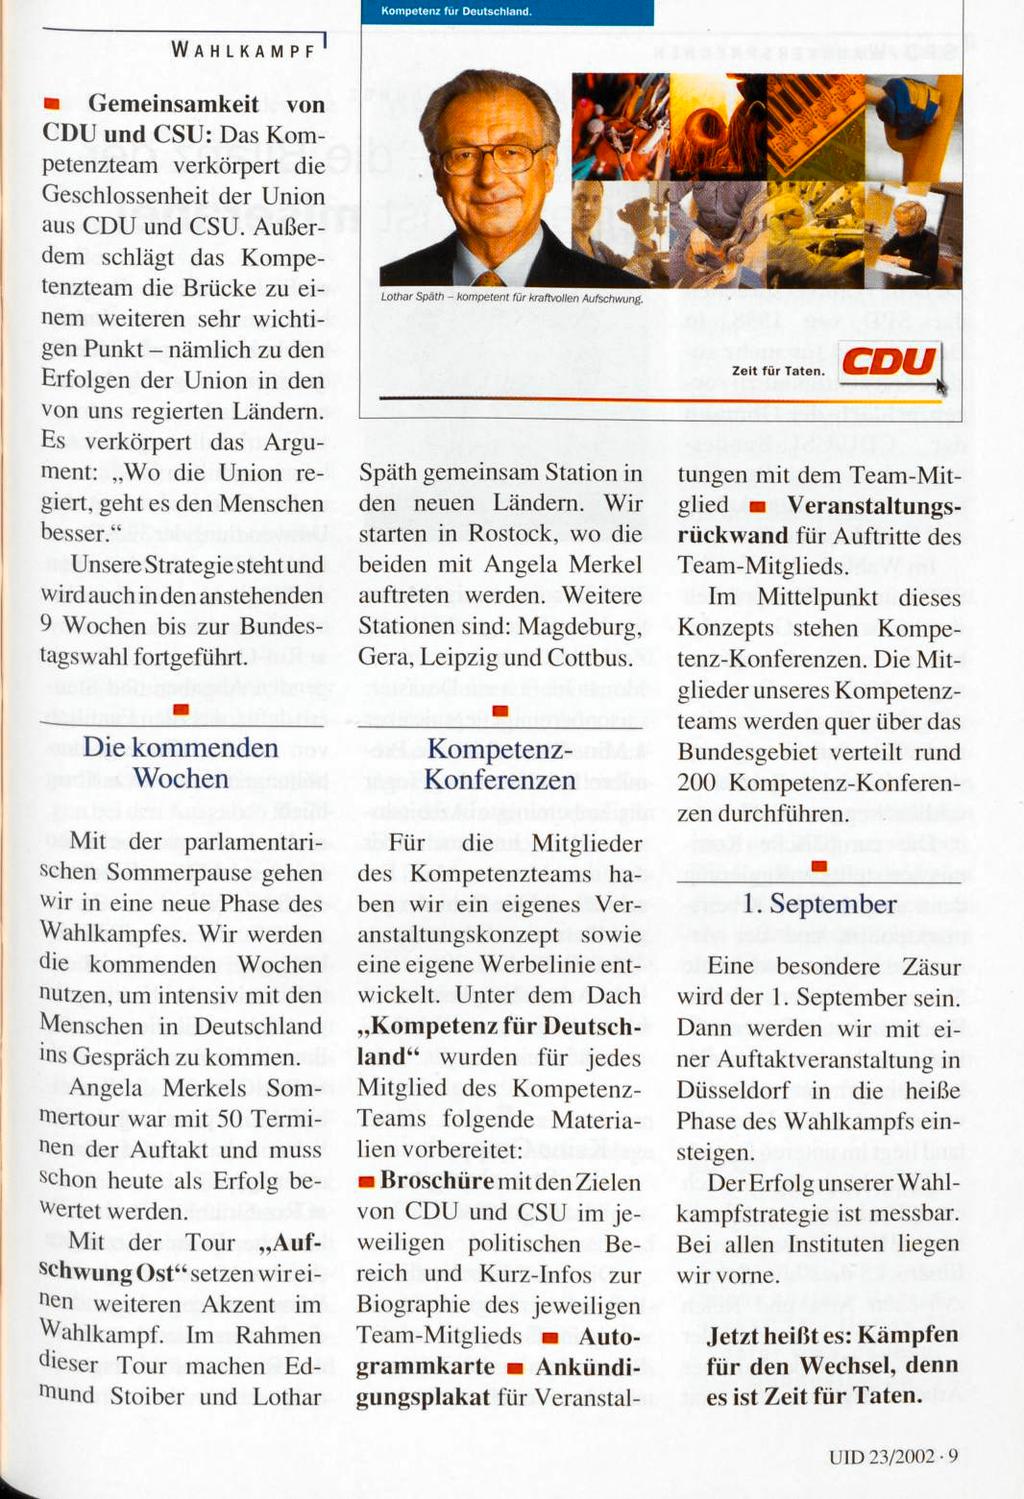 WAHLKAMPF' Gemeinsamkeit von CDU und CSU: Das Kompetenzteam verkörpert die Geschlossenheit der Union aus CDU und CSU.